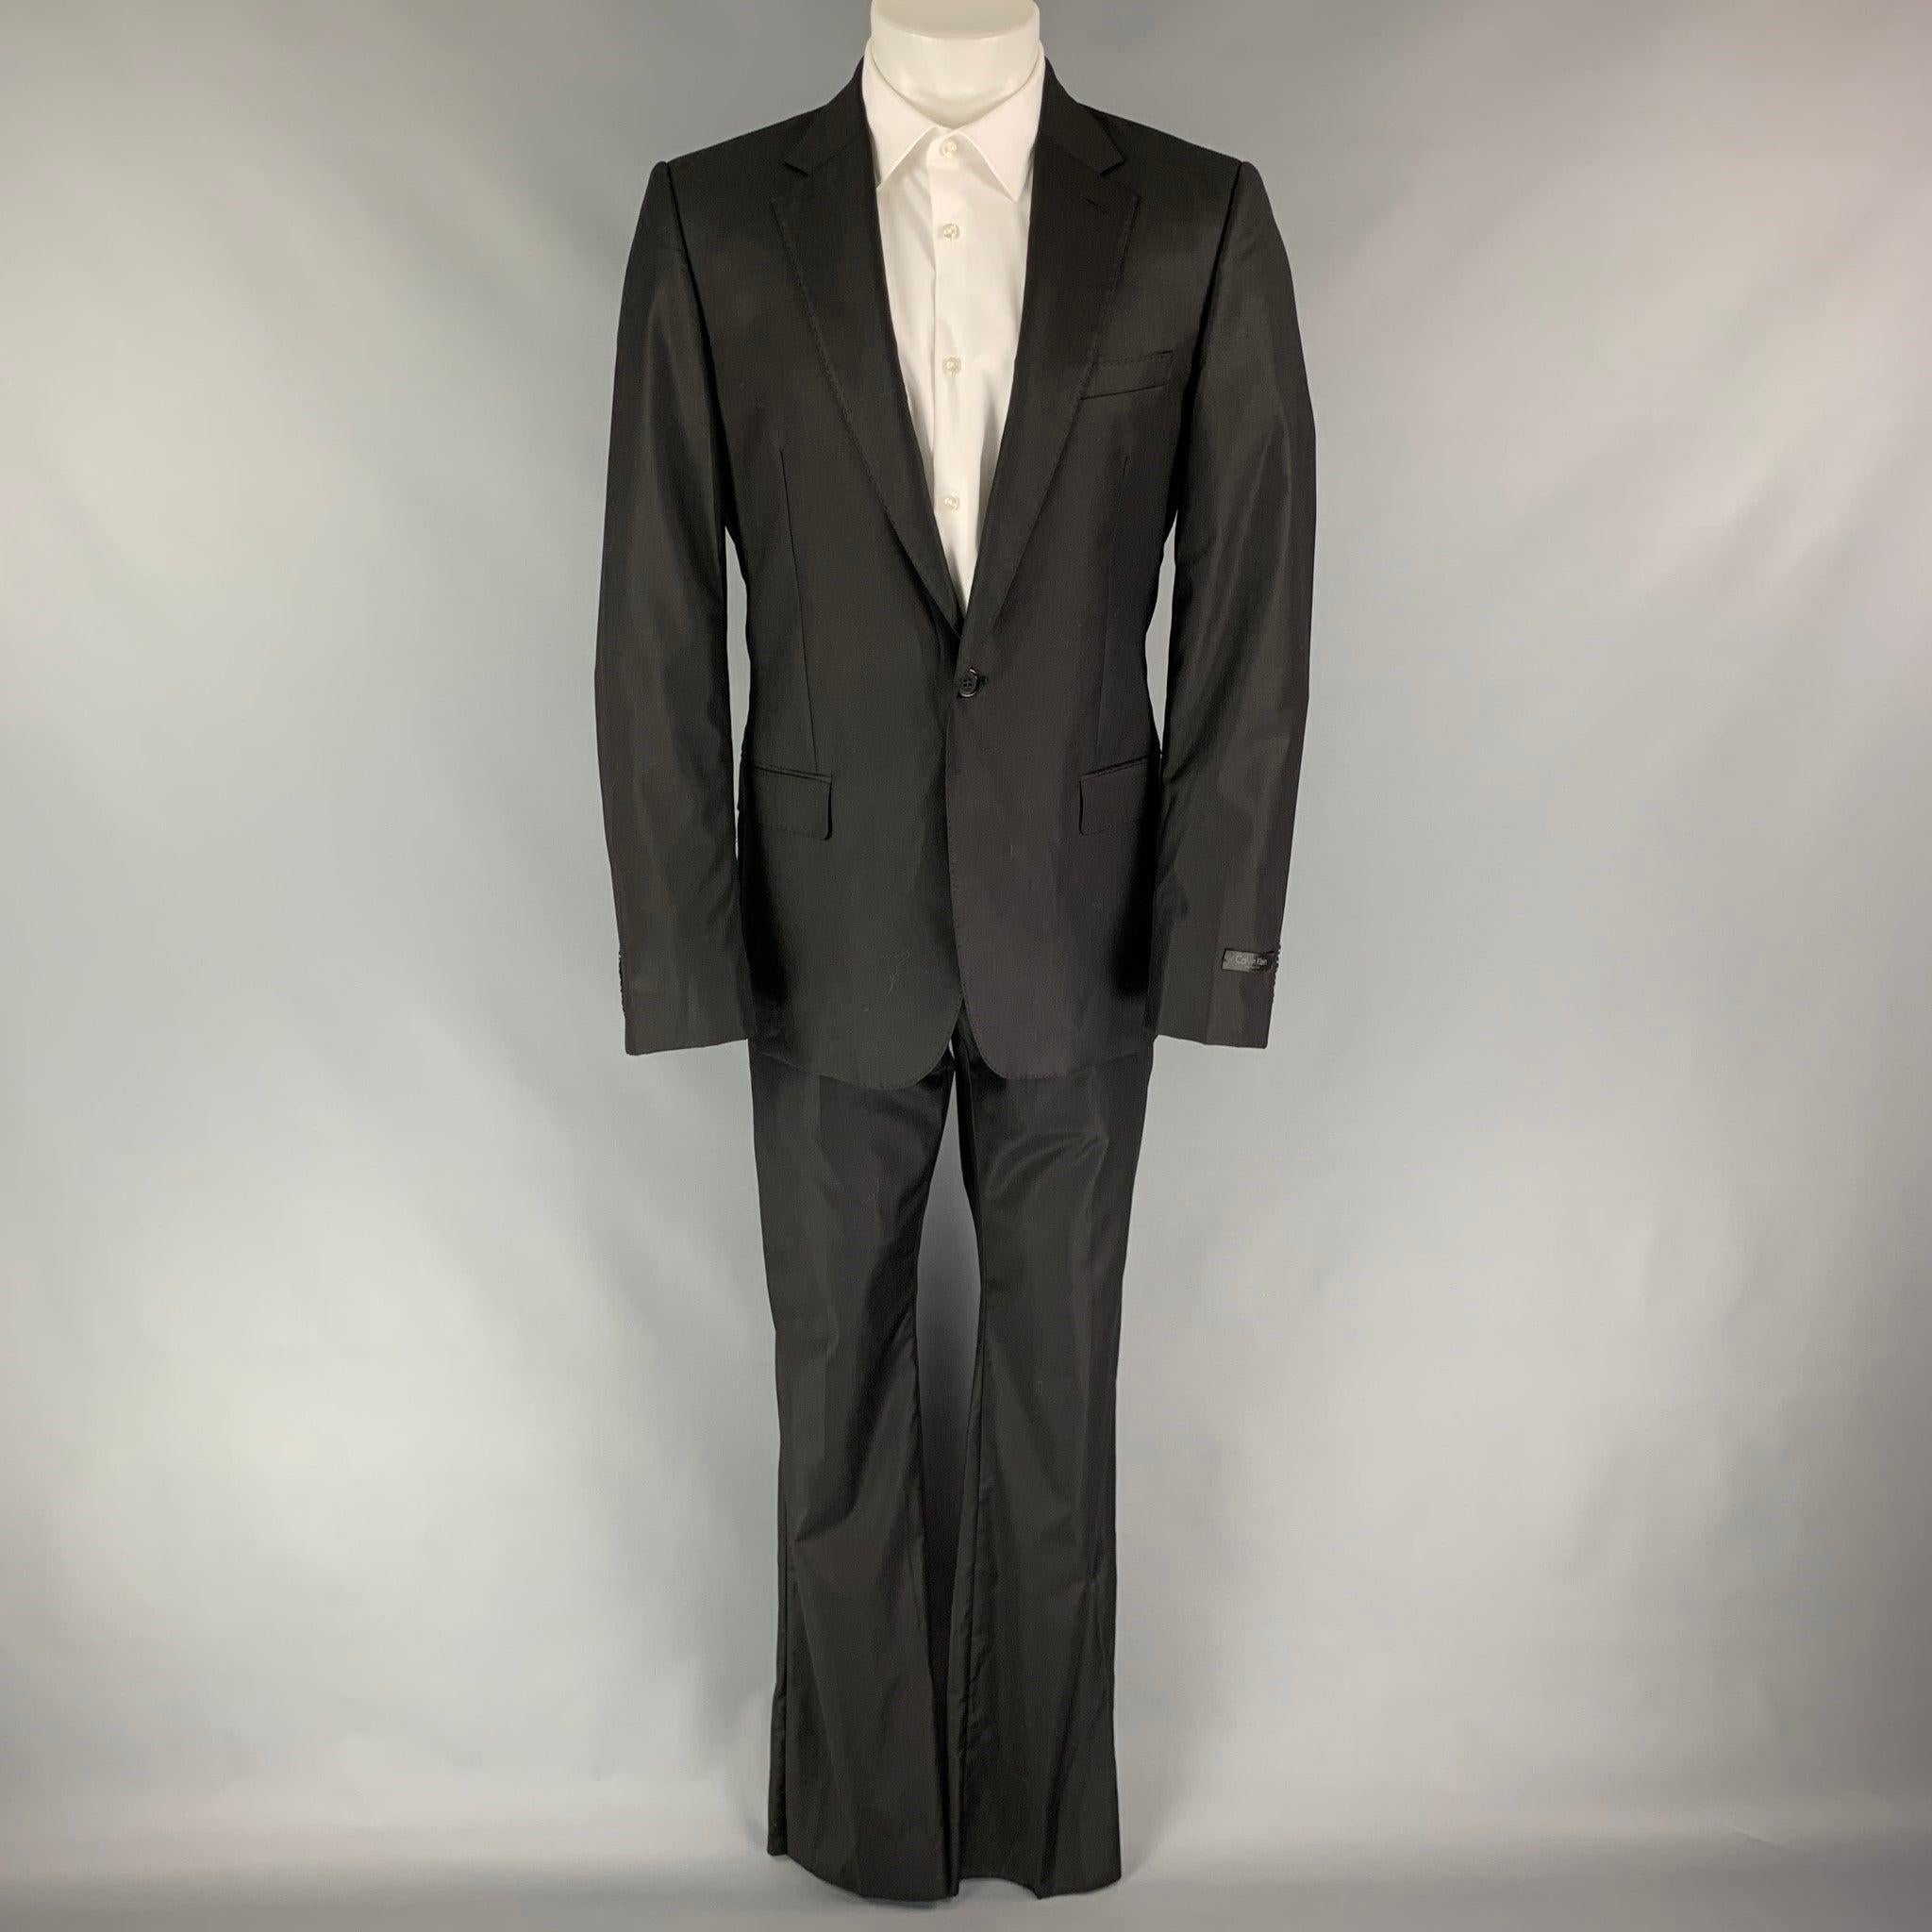 CALVIN KLEIN COLLECTION
Der Anzug ist aus schwarzer Wolle mit Vollfutter und besteht aus einem einreihigen, einknöpfigen Sportmantel mit geteiltem Revers und einer passenden Hose mit flacher Front. Ausgezeichneter Pre-Owned Zustand. 

Markiert:  